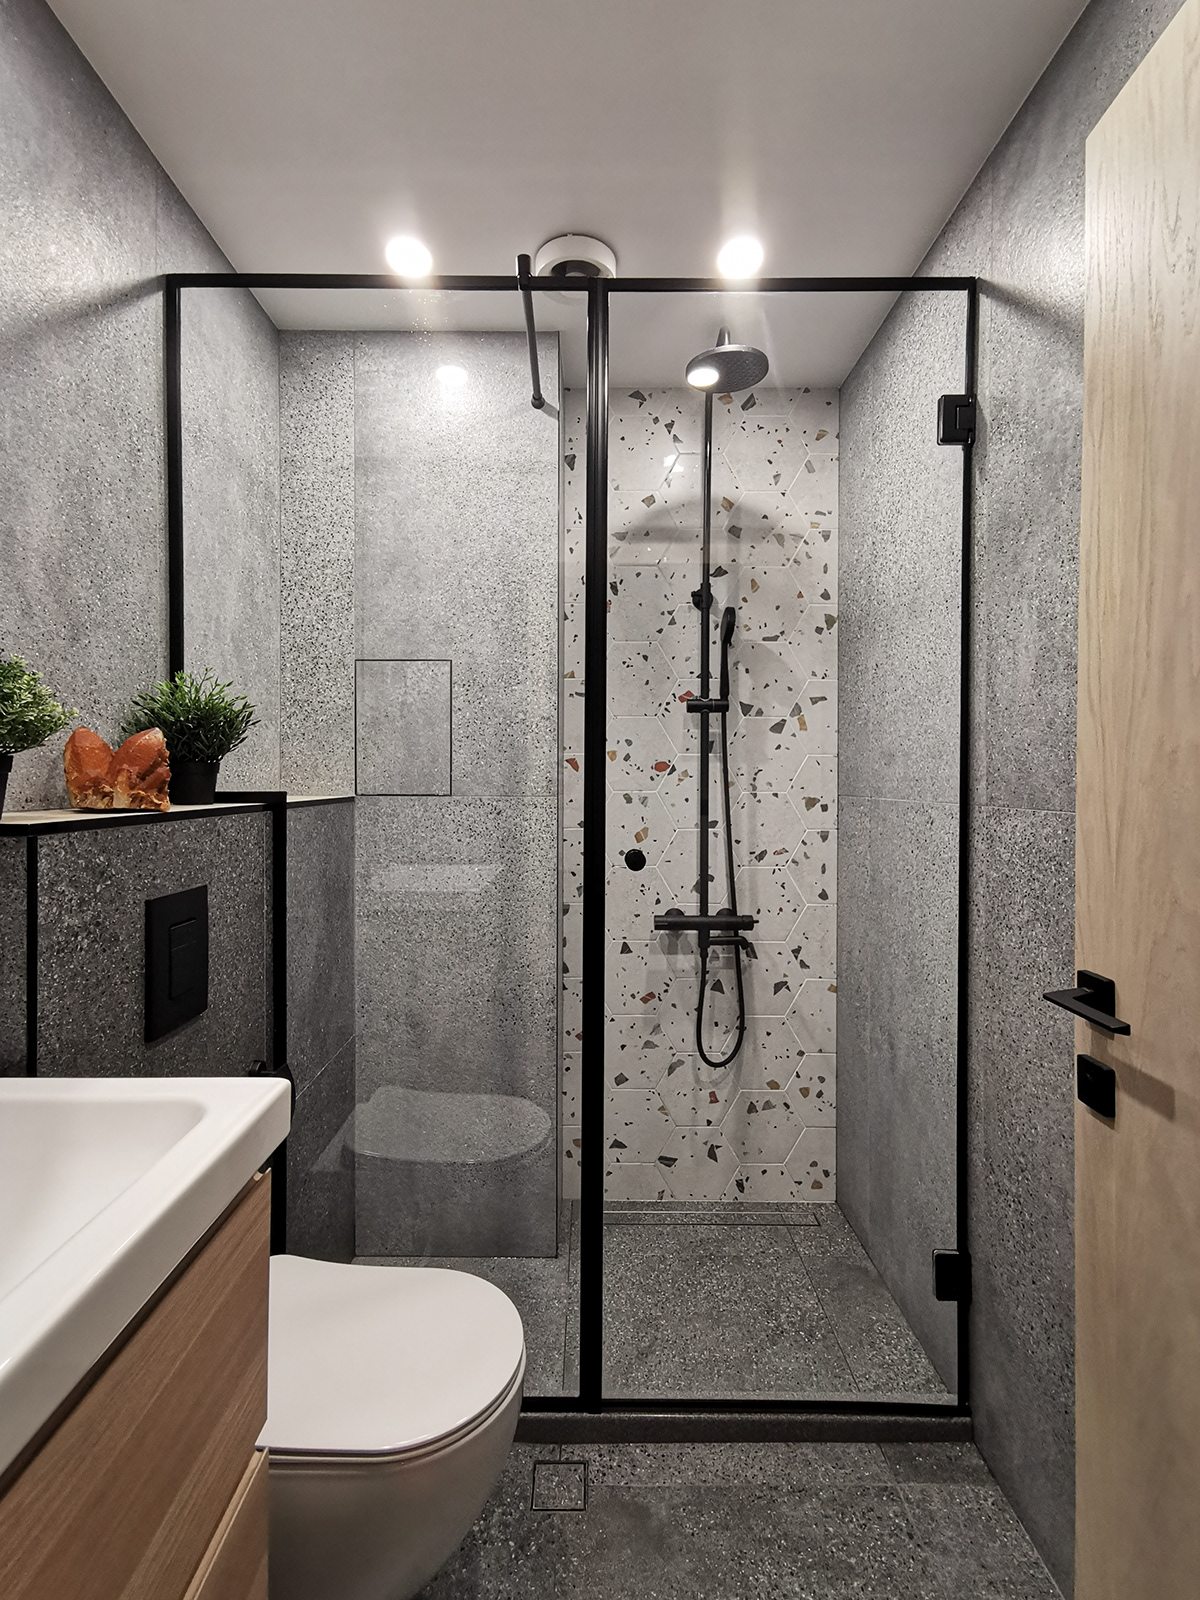 contemporary design interior design  bright elegant practical effective clean design